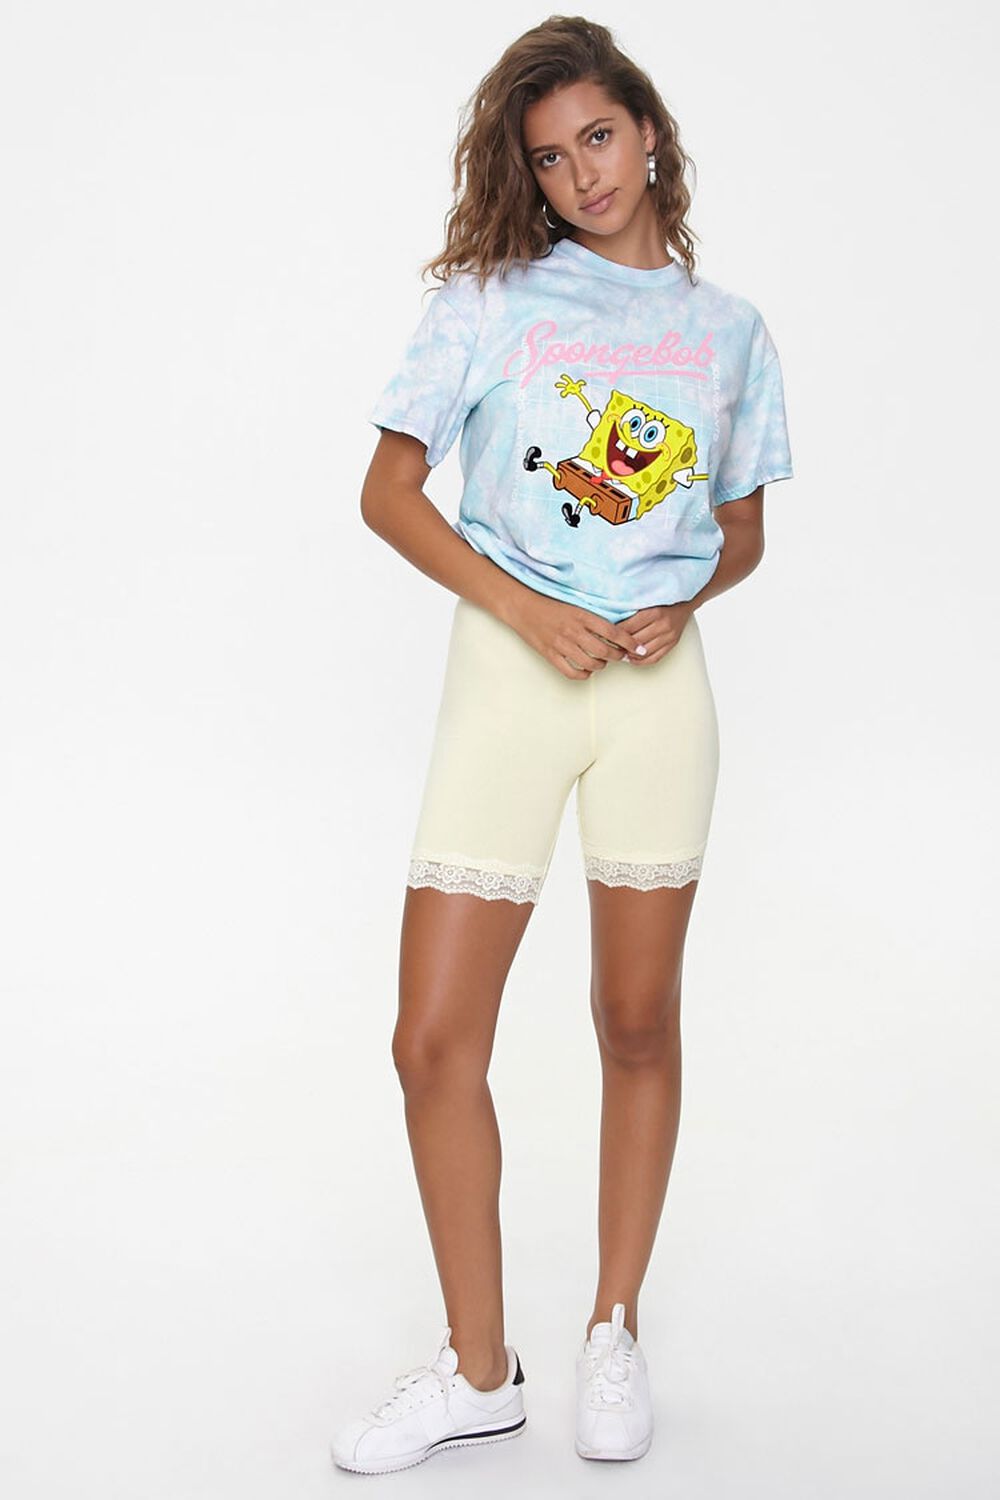 BESTFRIEND FOREVER Spongebob & - Jekasa sportswear